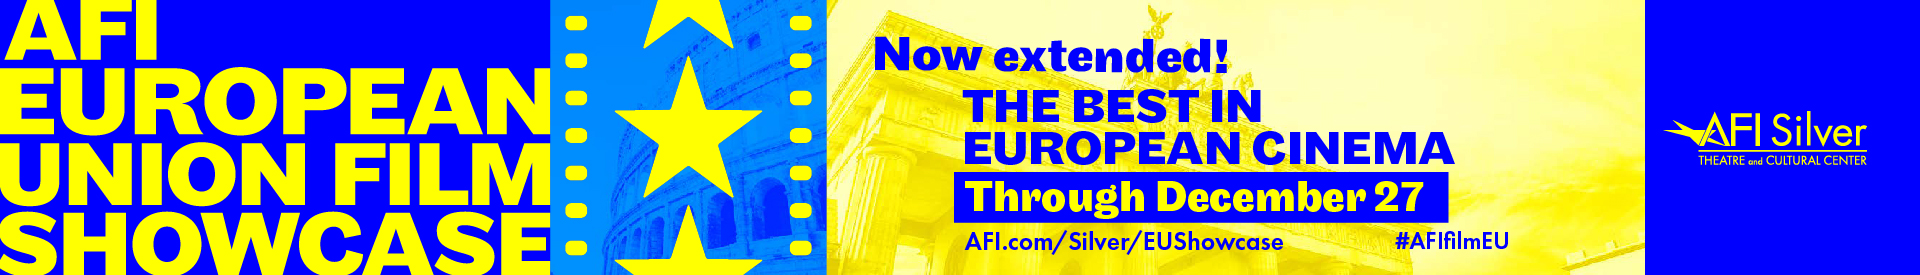 AFI European Union Film Showcase